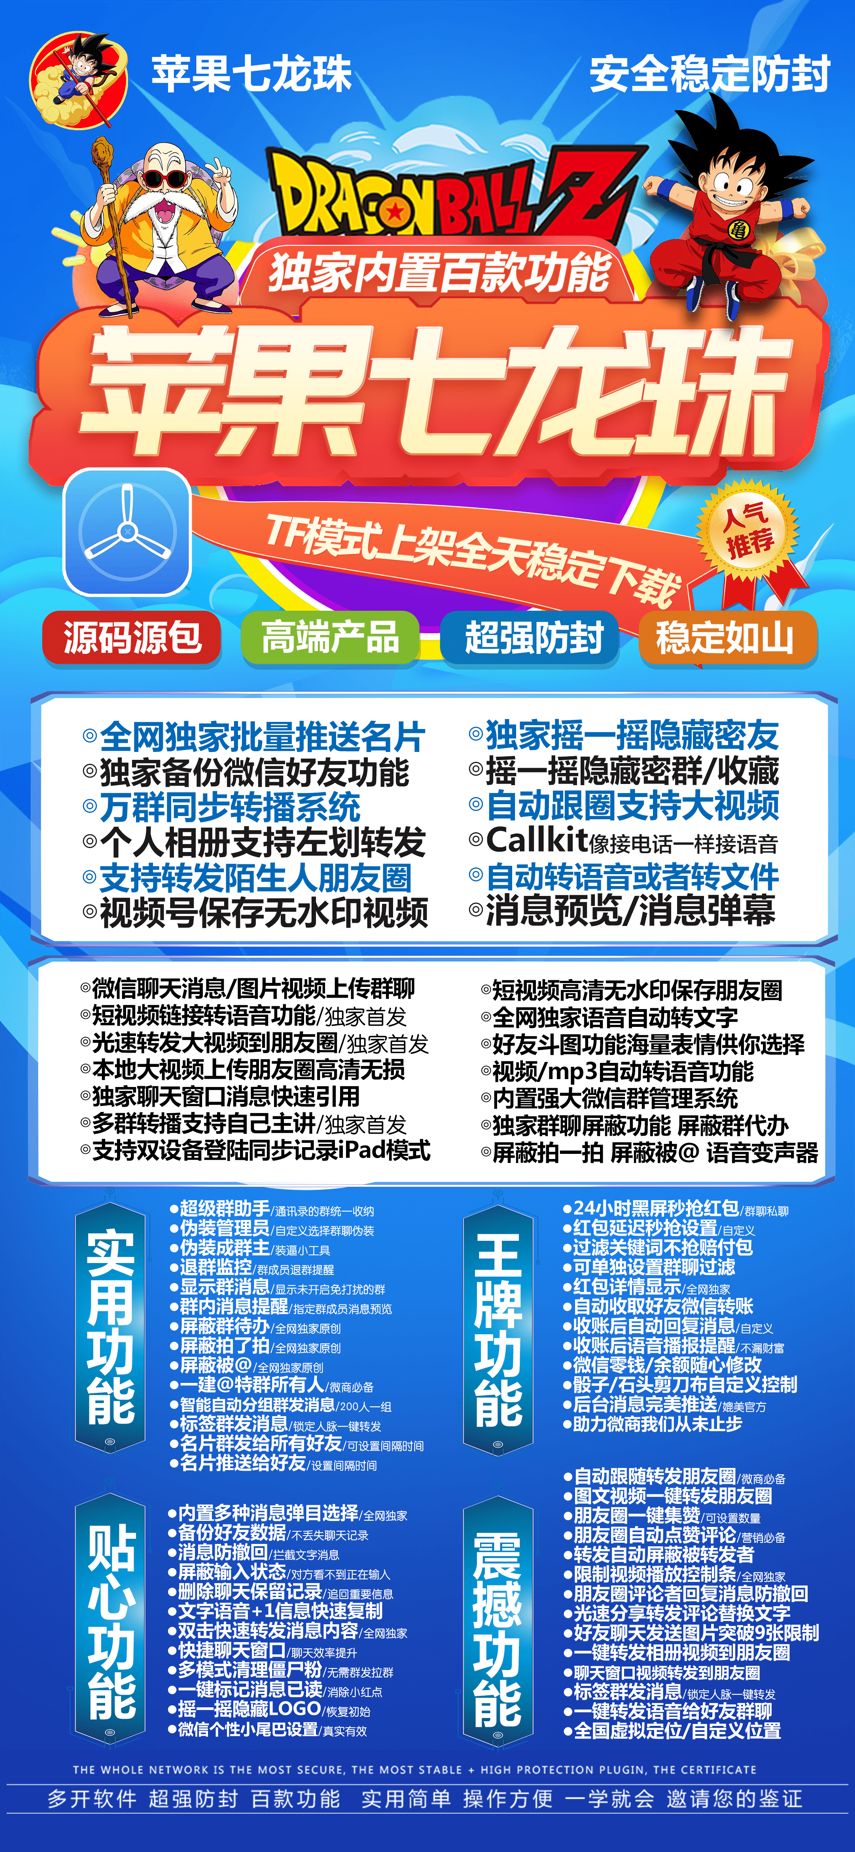 苹果七龙珠官网-苹果多开/微信多开/苹果微信分身-活动码激活购买以及下载地址